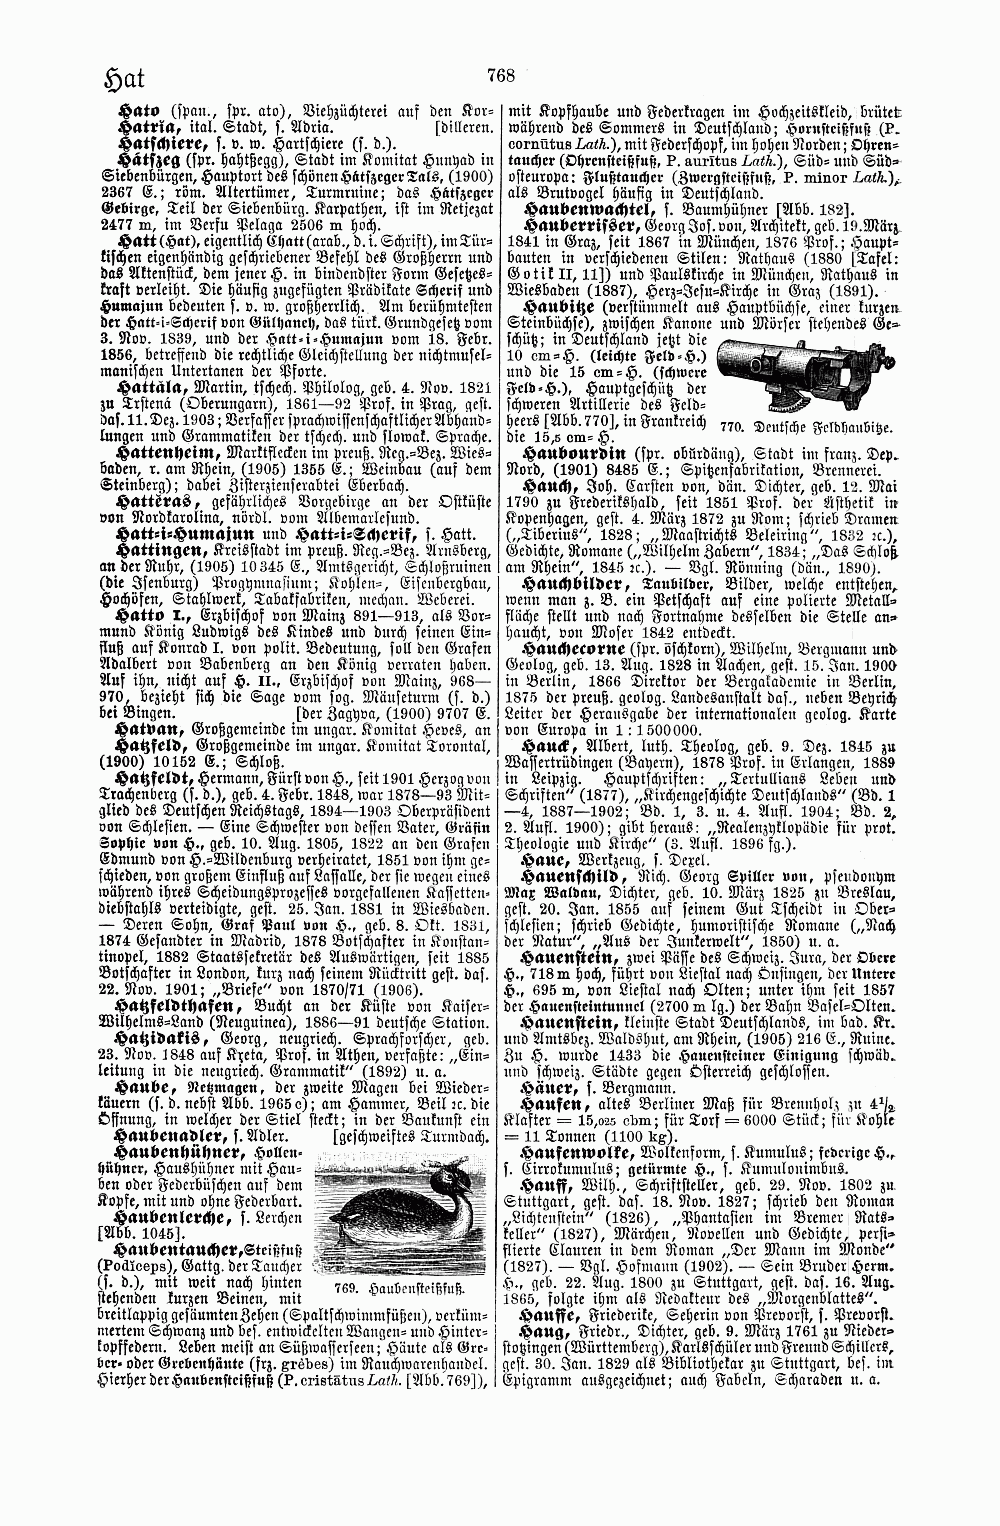 Brockhaus' Kleines Konversations-Lexikon, fünfte Auflage, Band 1. Leipzig 1911. S. 768